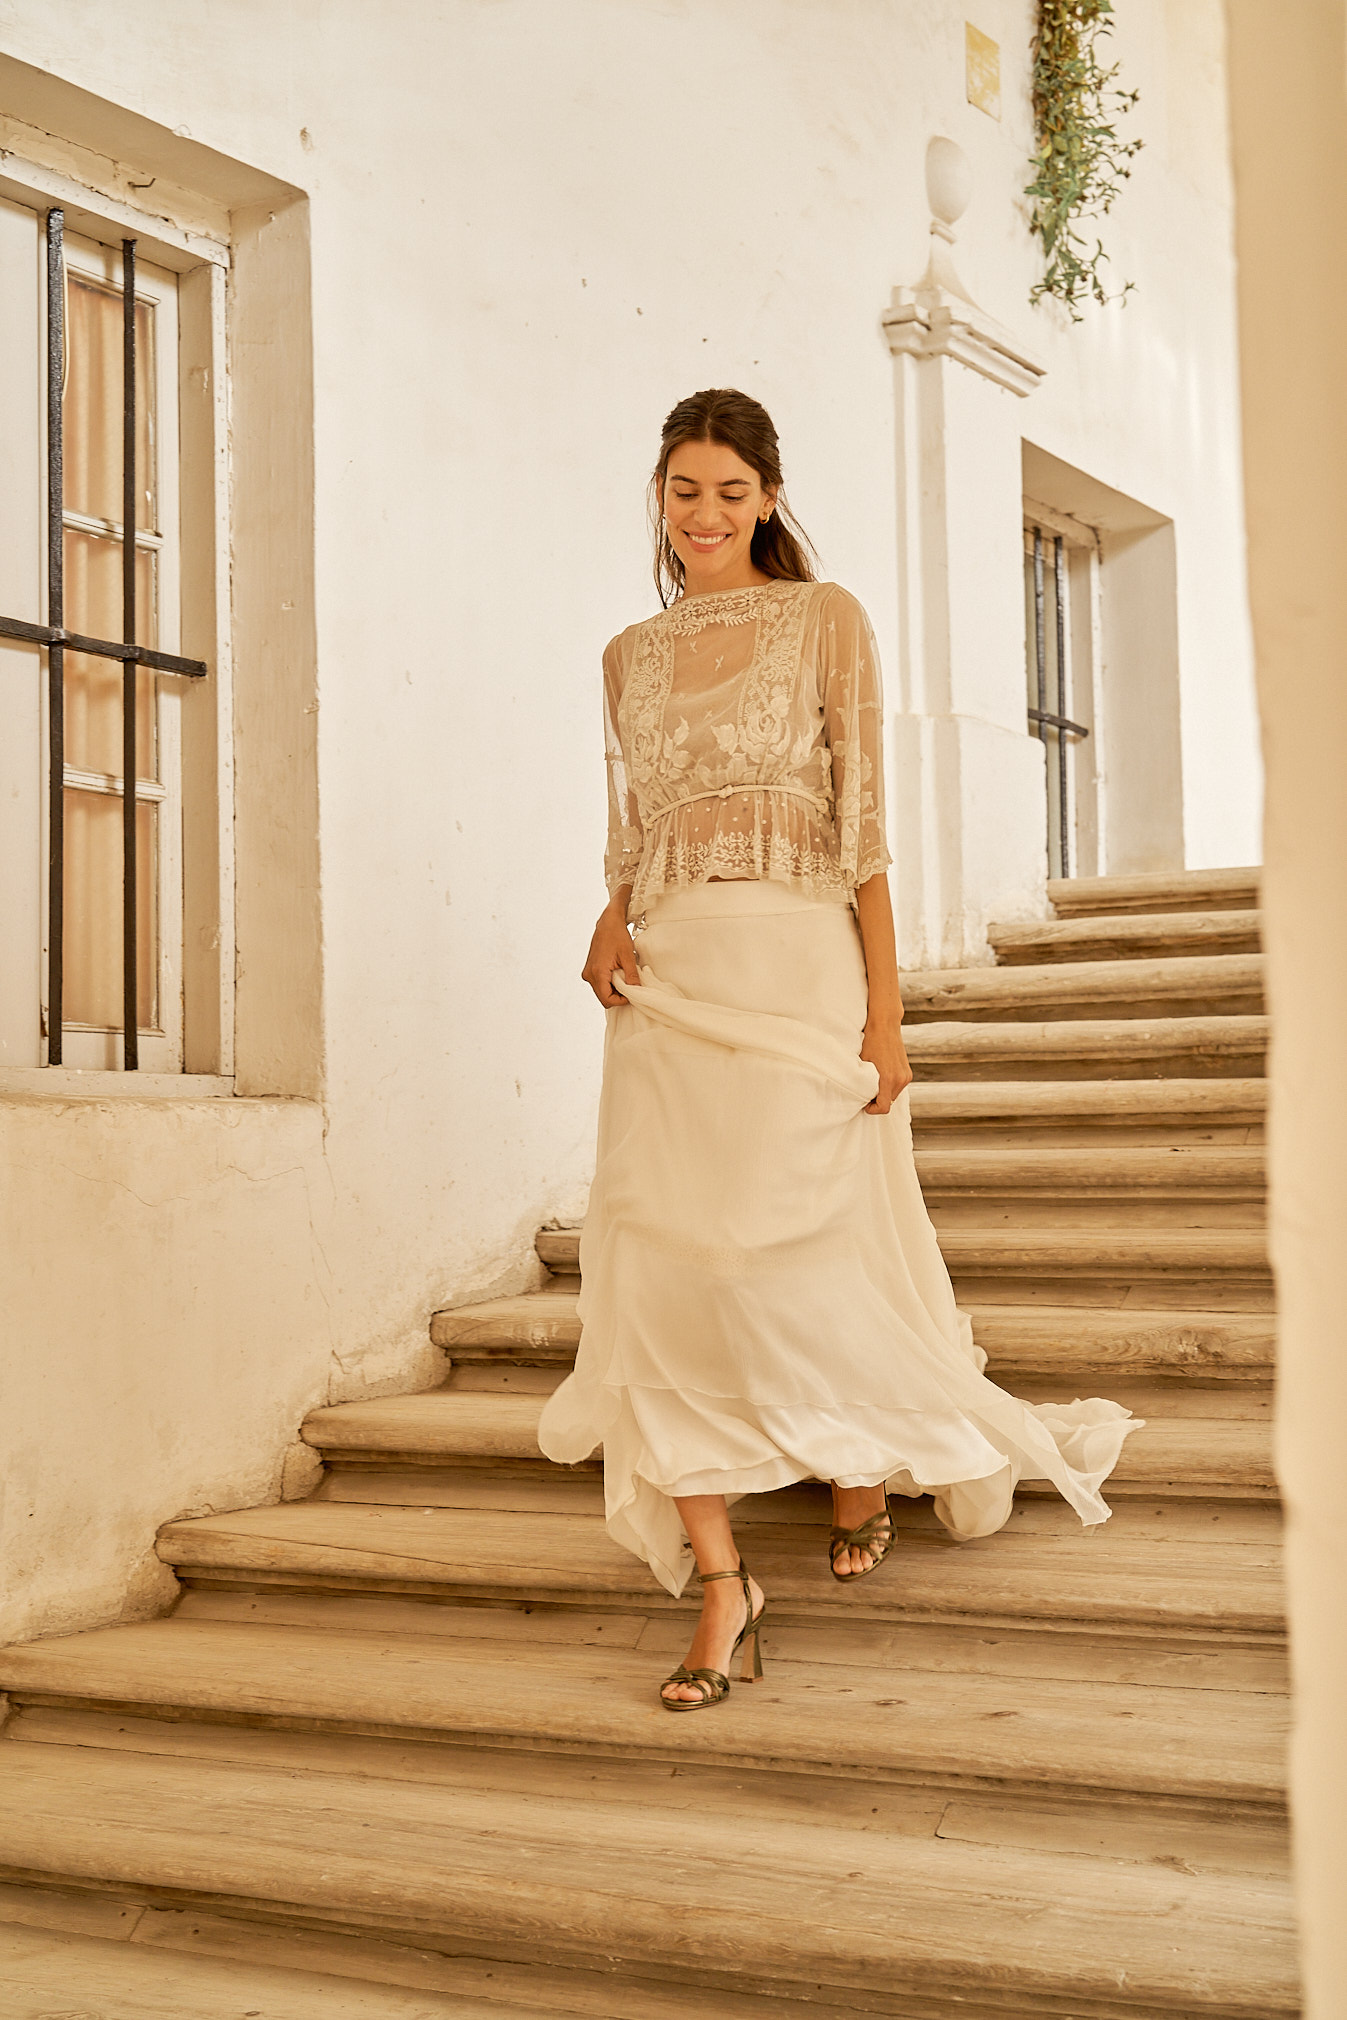 Novia elegante bajando escalones luciendo su vestido de novia y zapatos metalizados de Flordeasoka, destacando la combinación perfecta de tradición y tendencia.